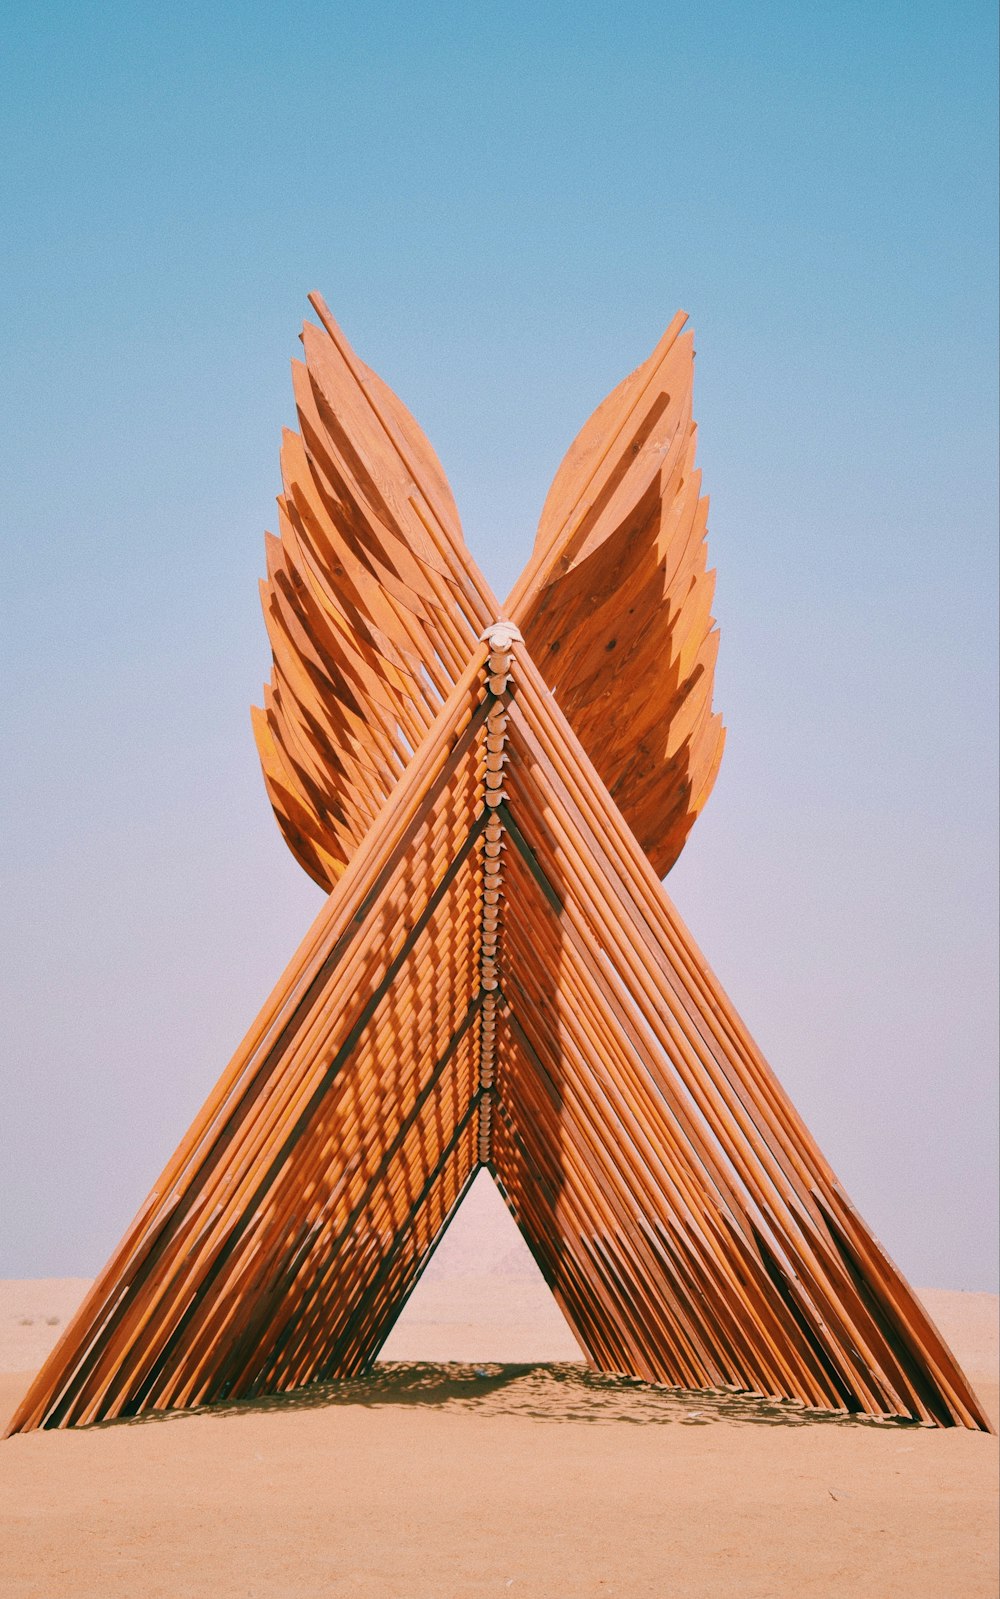 Eine Skulptur aus Holzstöcken in der Wüste